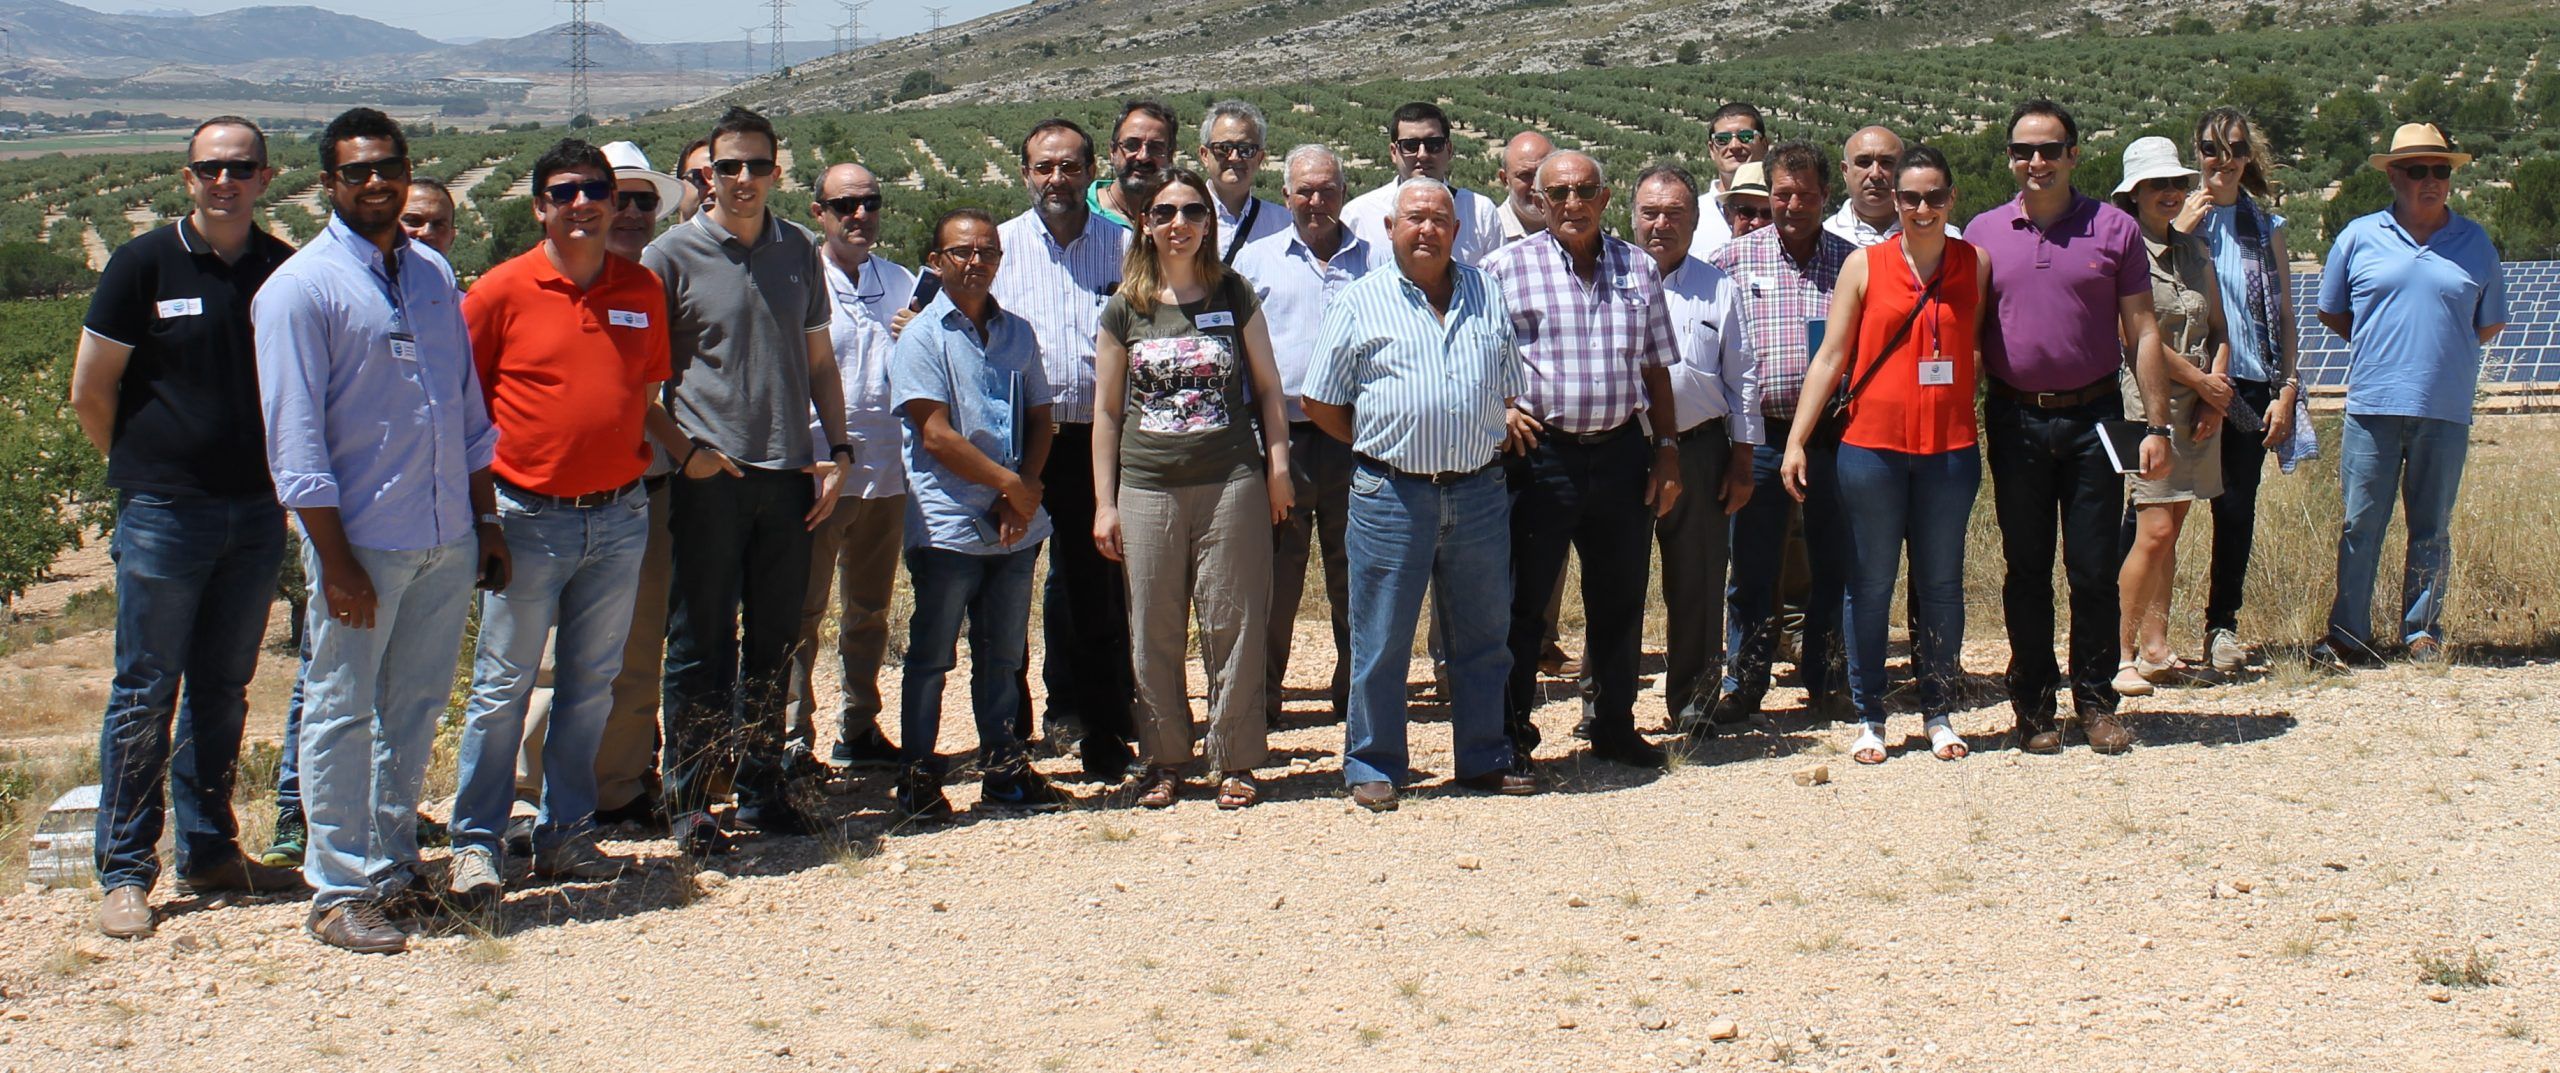 riegogrupocehegin - Los agricultores y regantes de Cehegín visitan una instalación de riego con bombeo solar